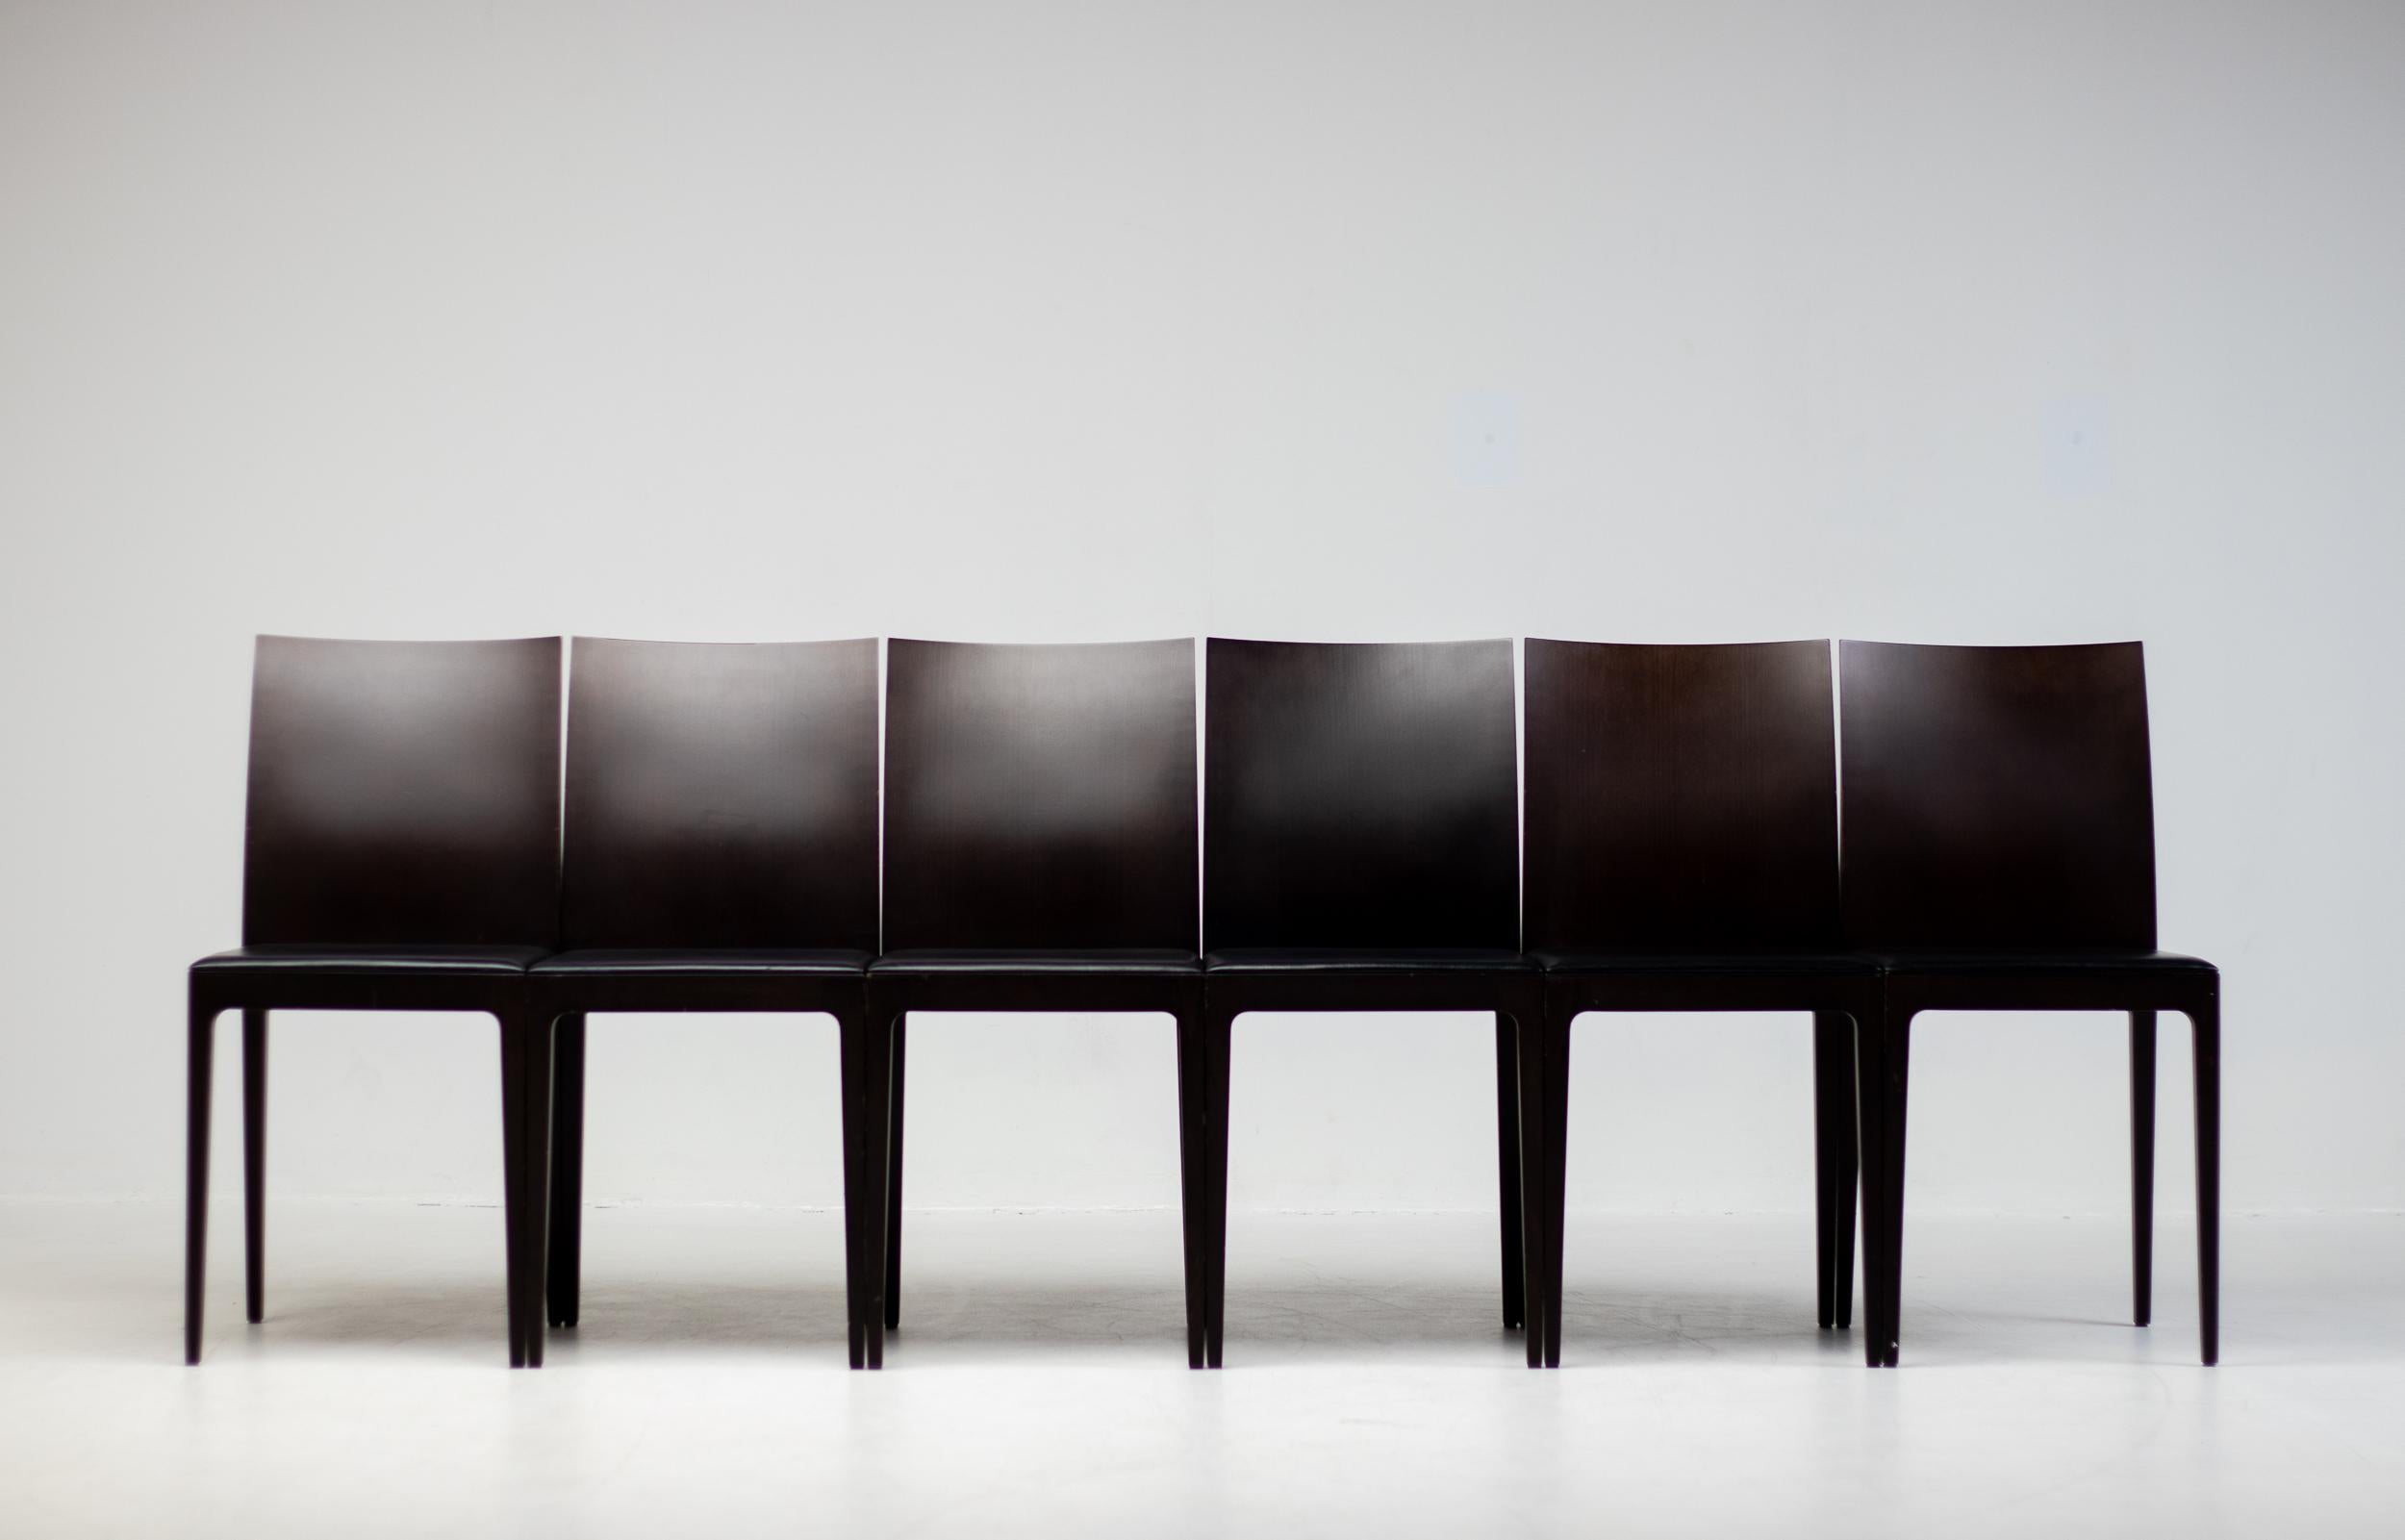 Un ensemble de six chaises de salle à manger Anna R conçues par Ludovica et Roberto Palomba pour Crassevig, Italie. 
Ces chaises sont dotées d'un cadre en bois massif brun foncé, d'un dossier à double panneau et d'une assise recouverte de cuir noir.